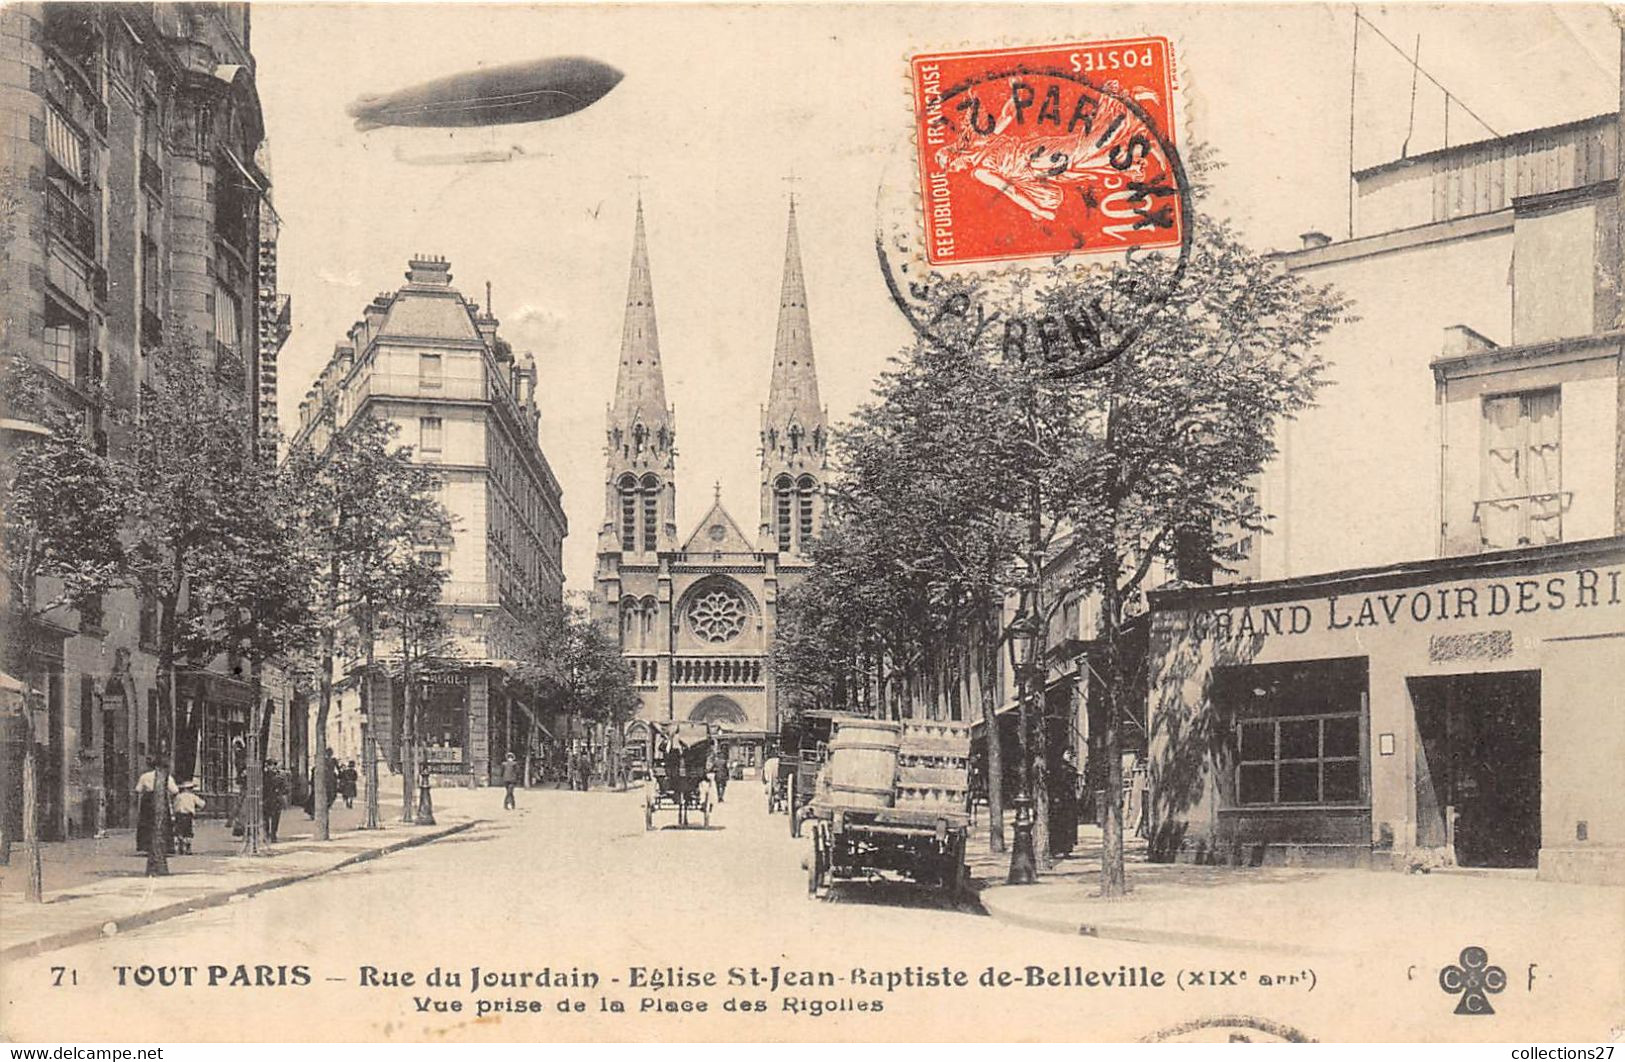 PARIS-75019-TOUT PARIS- RUE DU JOURDAIN EGLISE ST-JEAN BAPTISTE DE BELLEVILLE VUE PRISE DE LA PLACEDES RIGOLLES - Arrondissement: 19